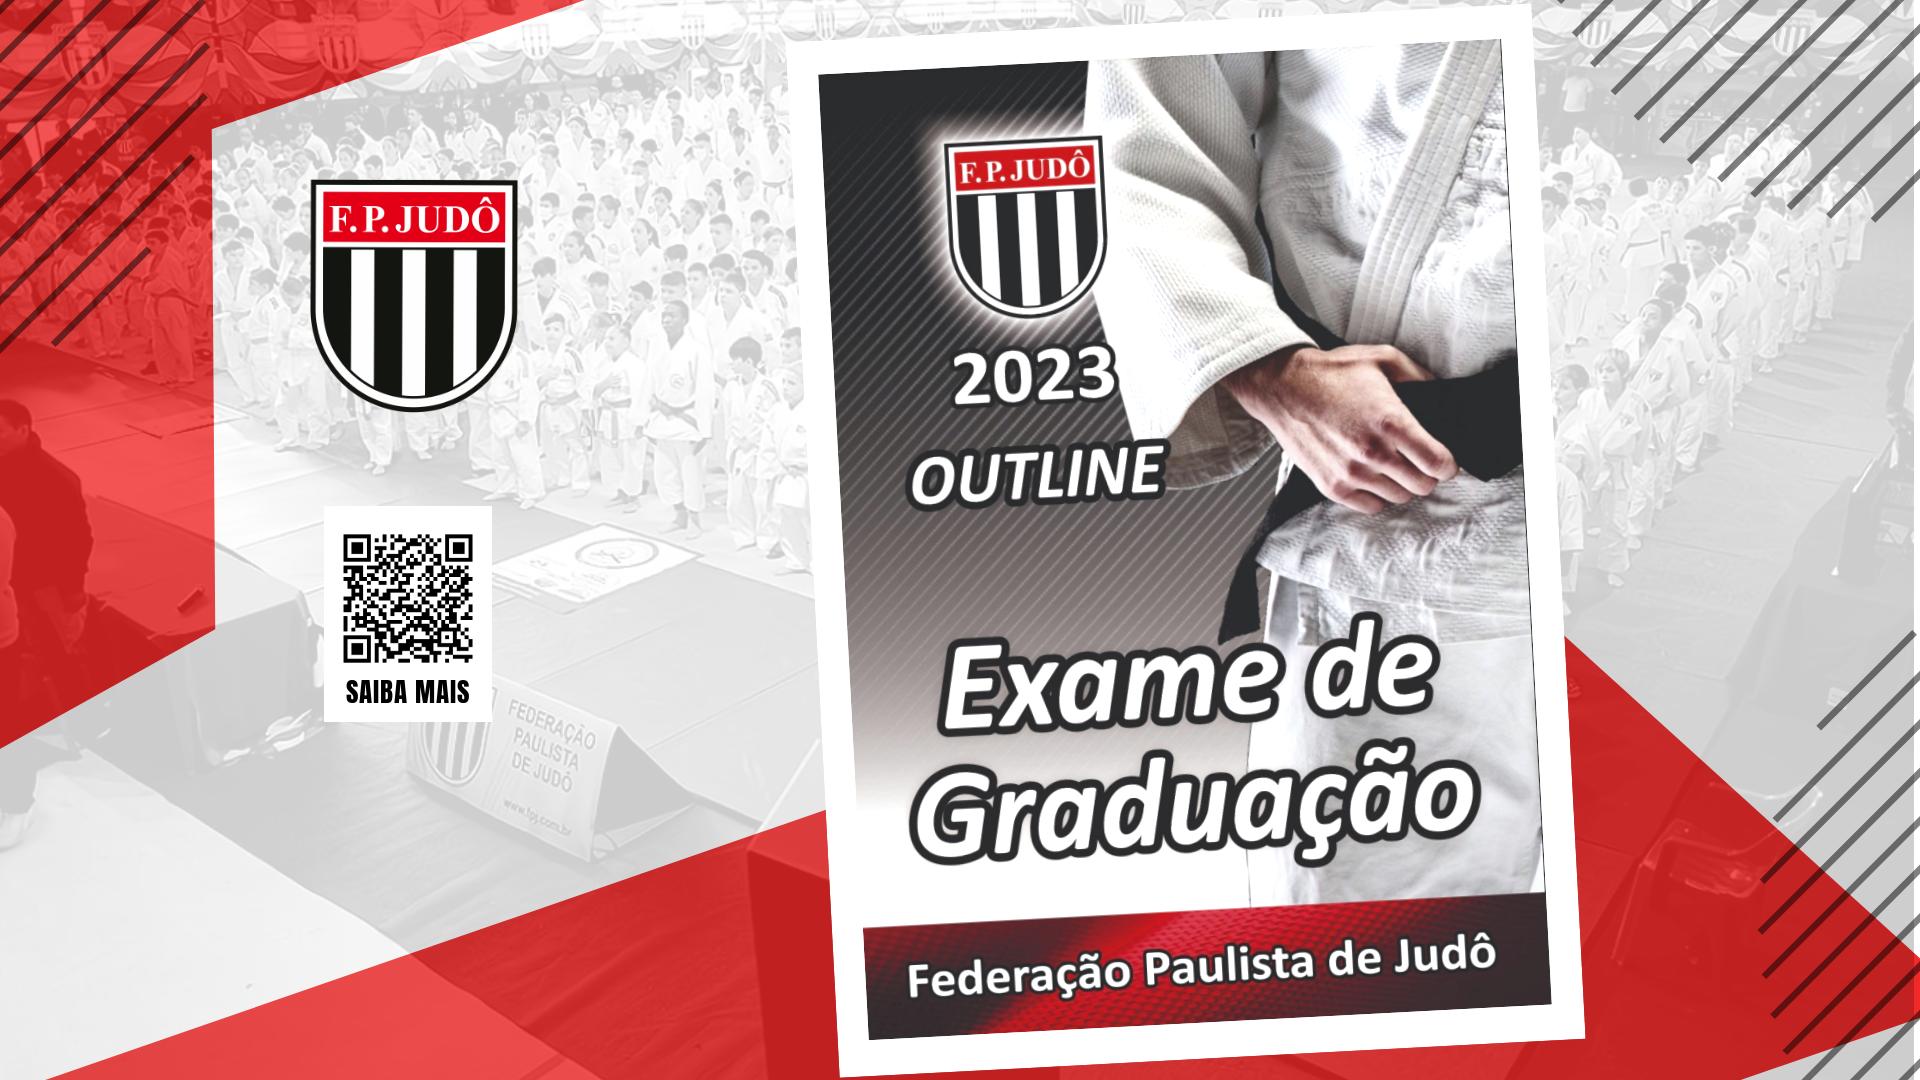 Outline Exame de Graduação 2023